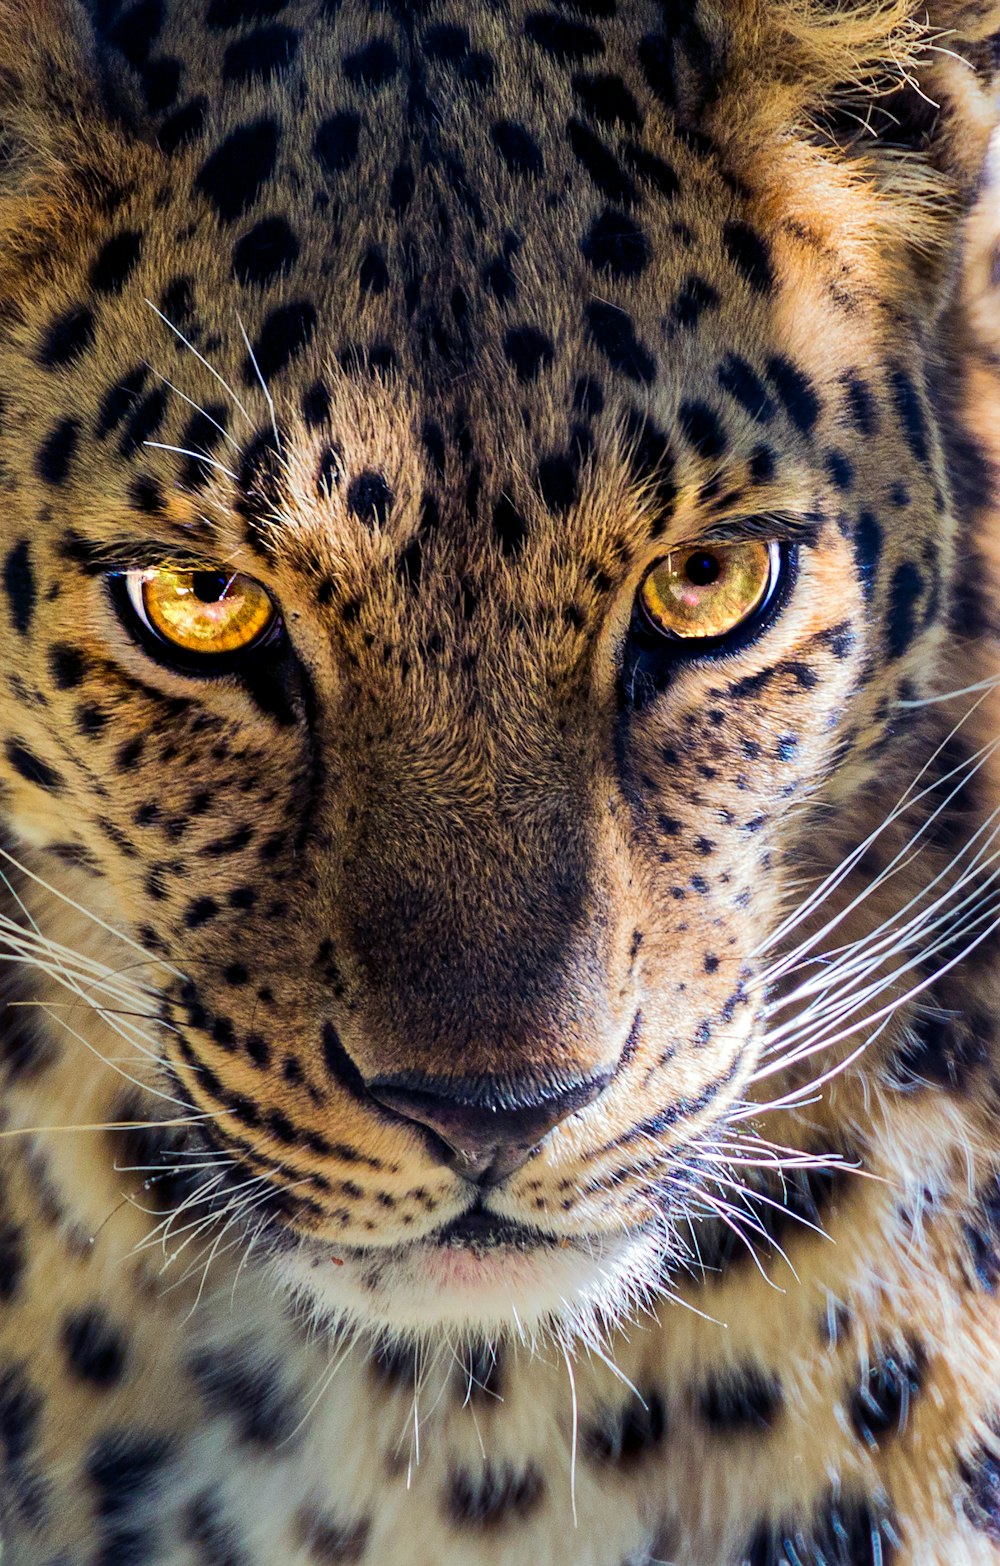 Más de 500 imágenes de jaguares | Descargar imágenes gratis en Unsplash